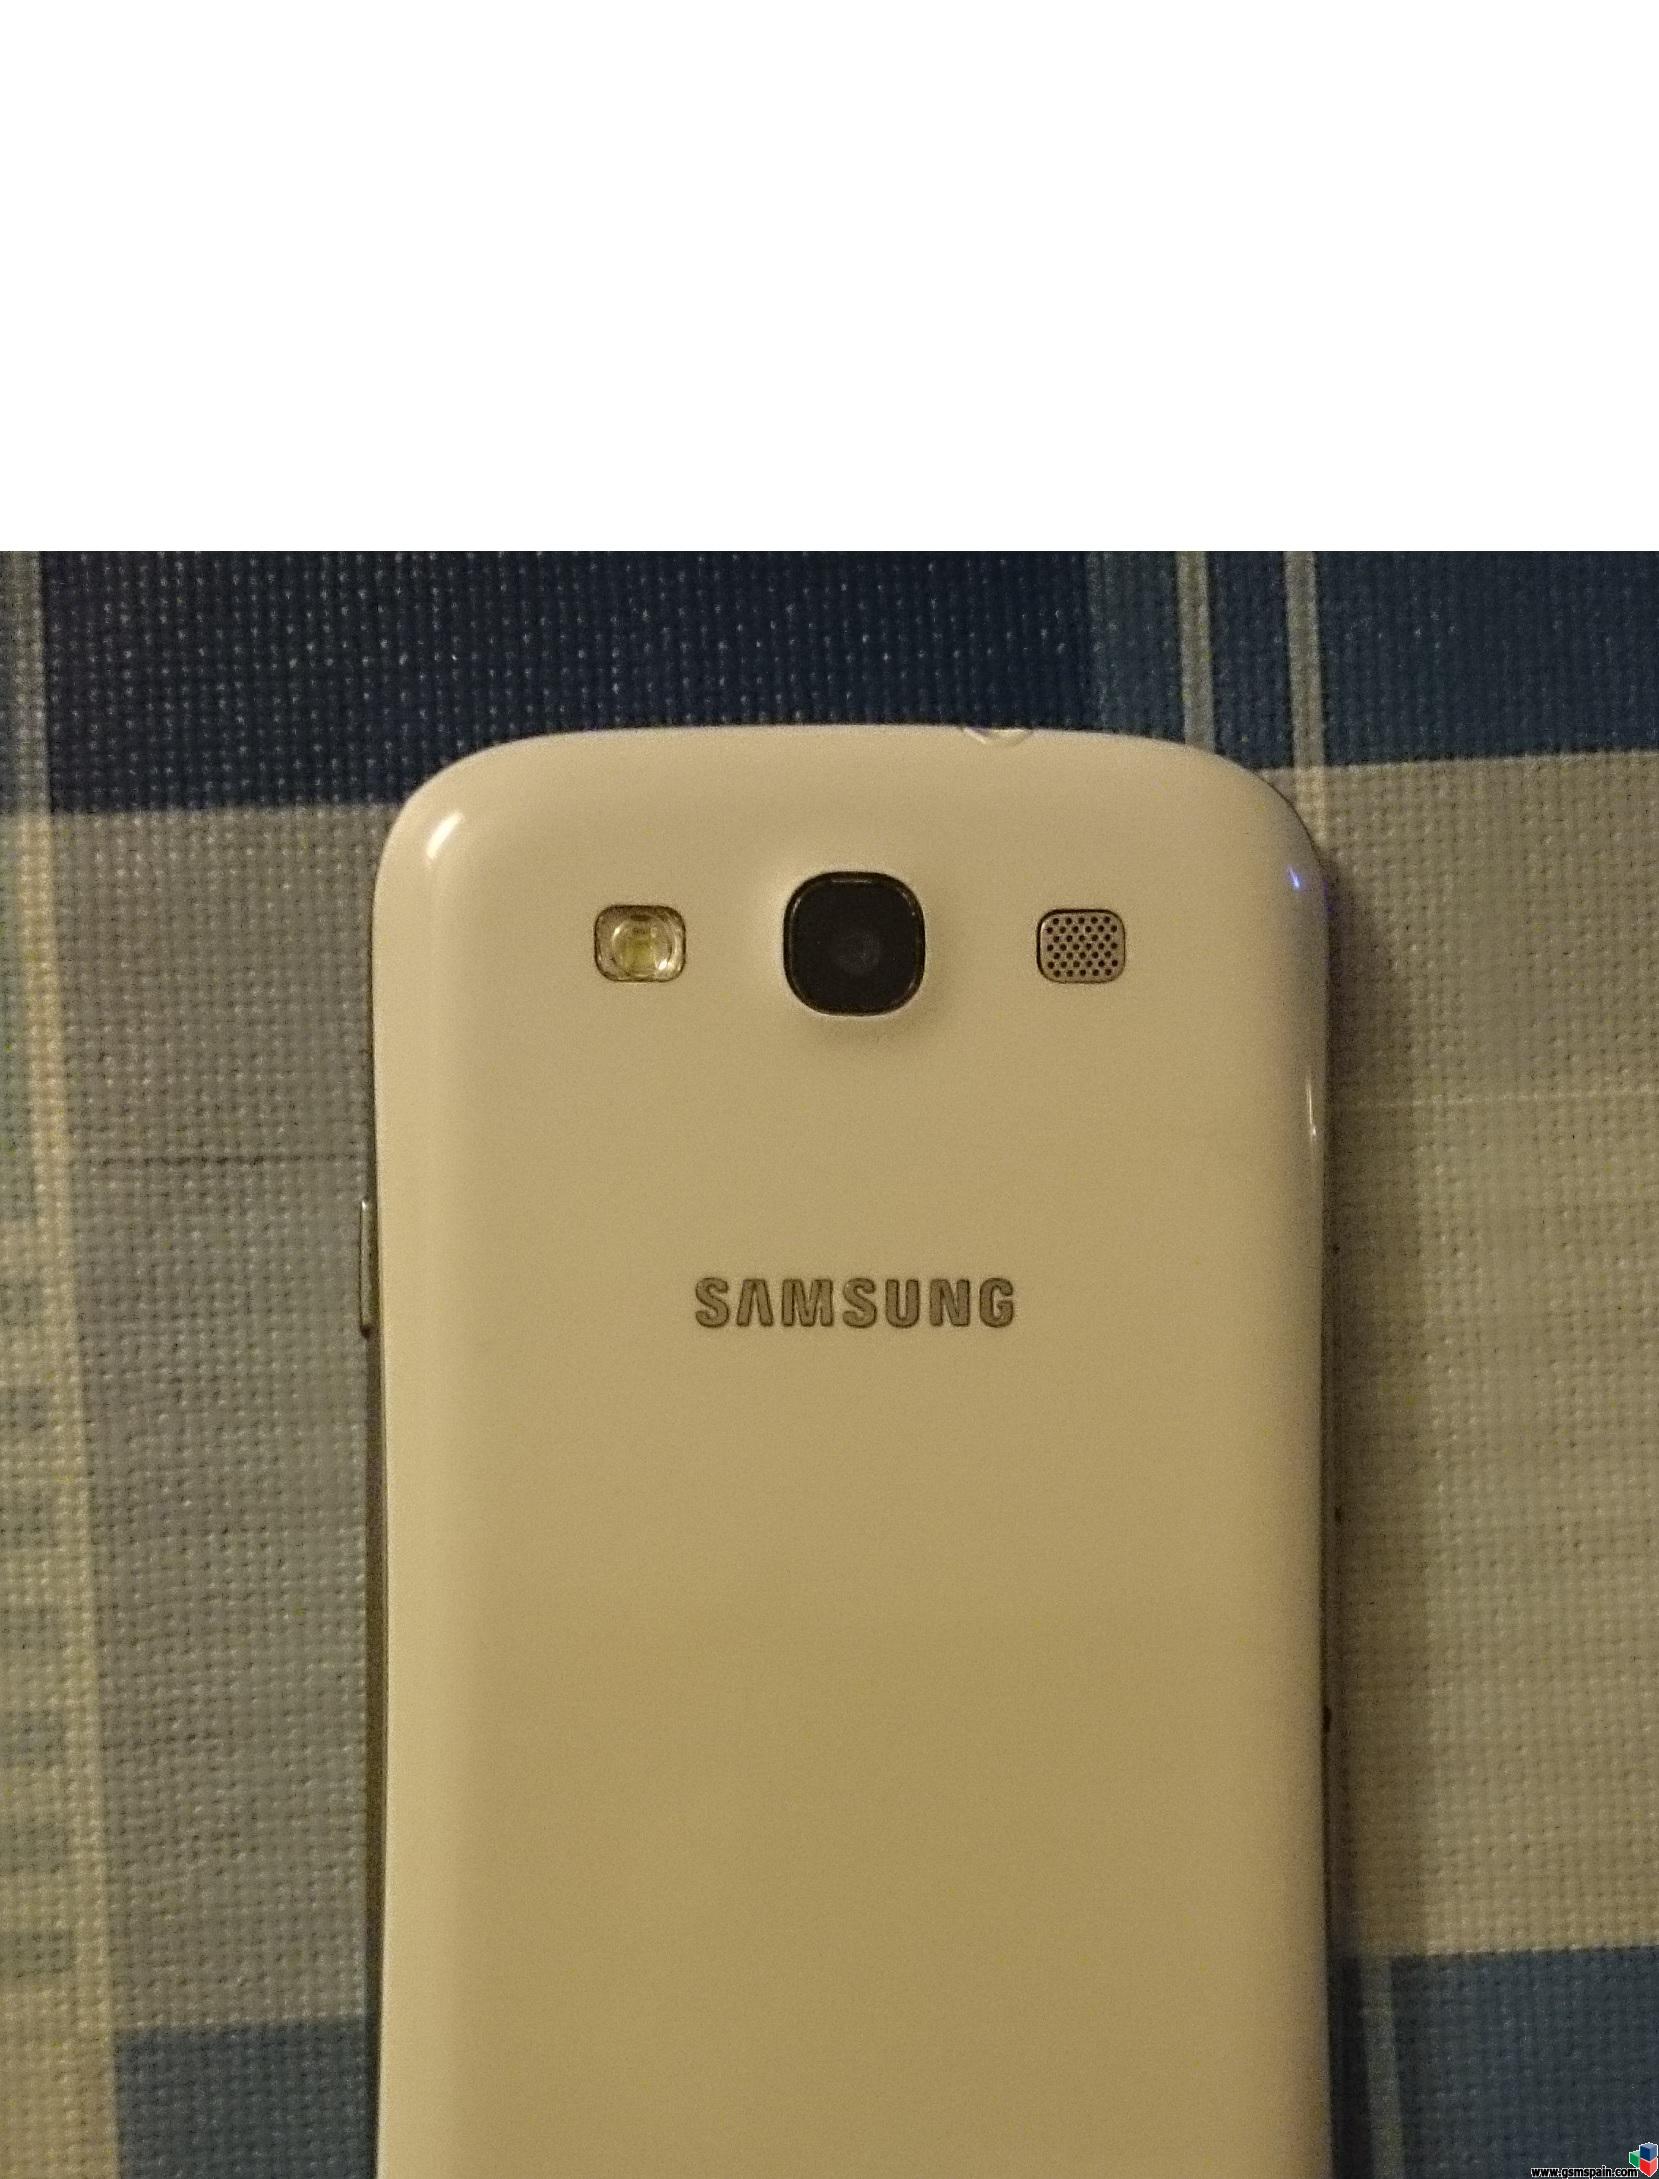 [VENDO] Samsung Galaxy S3 por 167 !!!!!!!!!!!